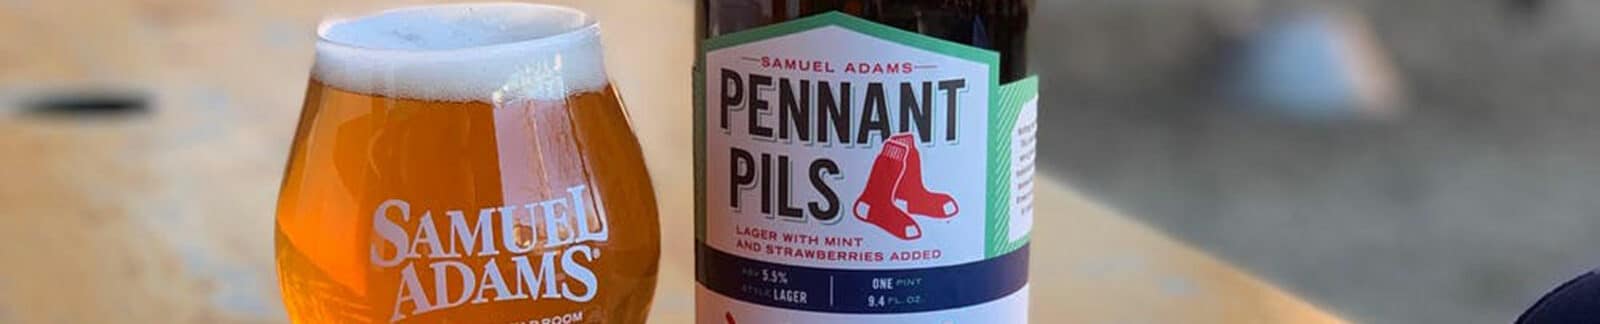 Pennant Pils – Samuel Adams header